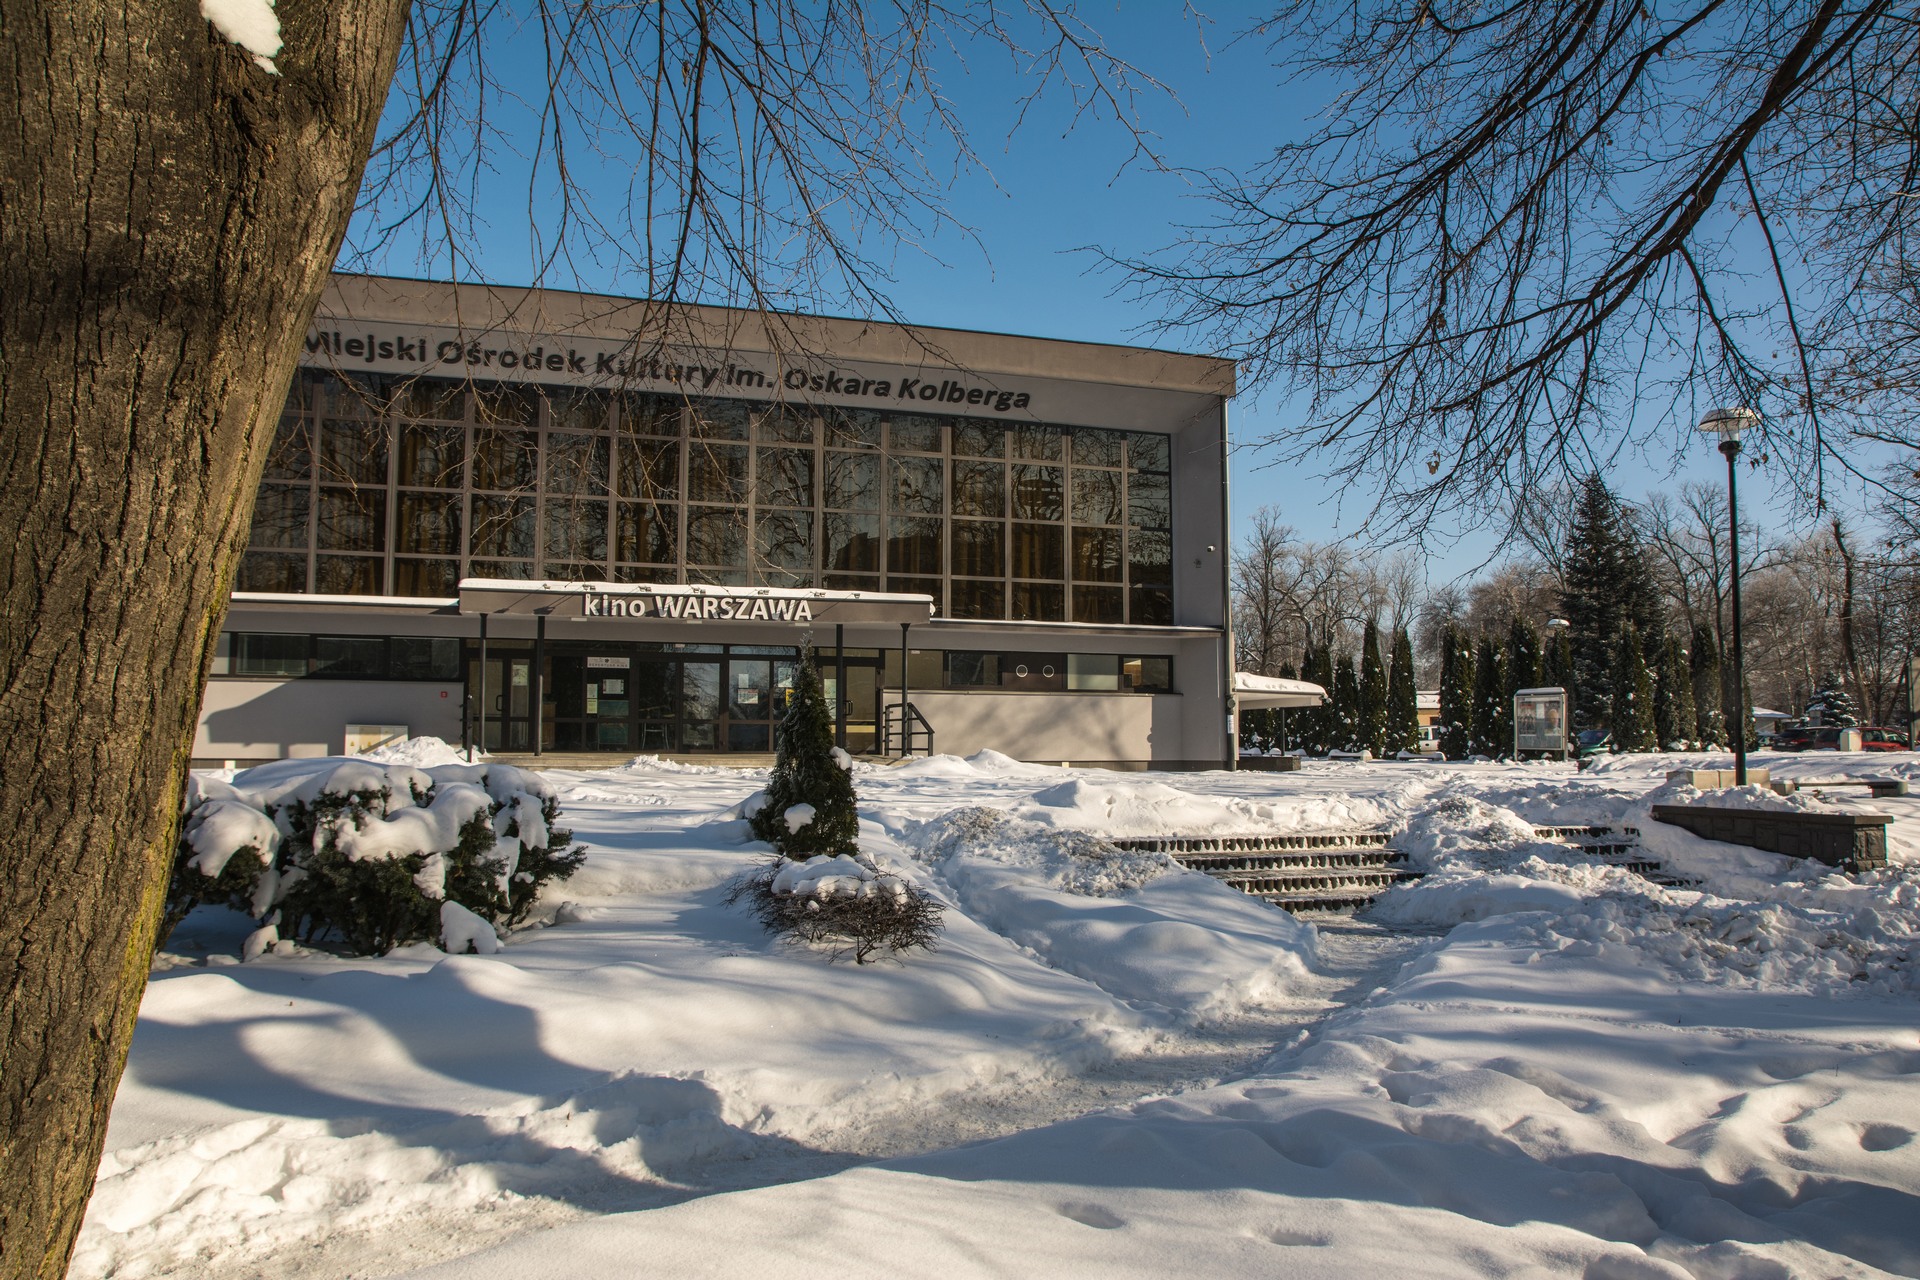 Miejski Ośrodek Kultury zimą